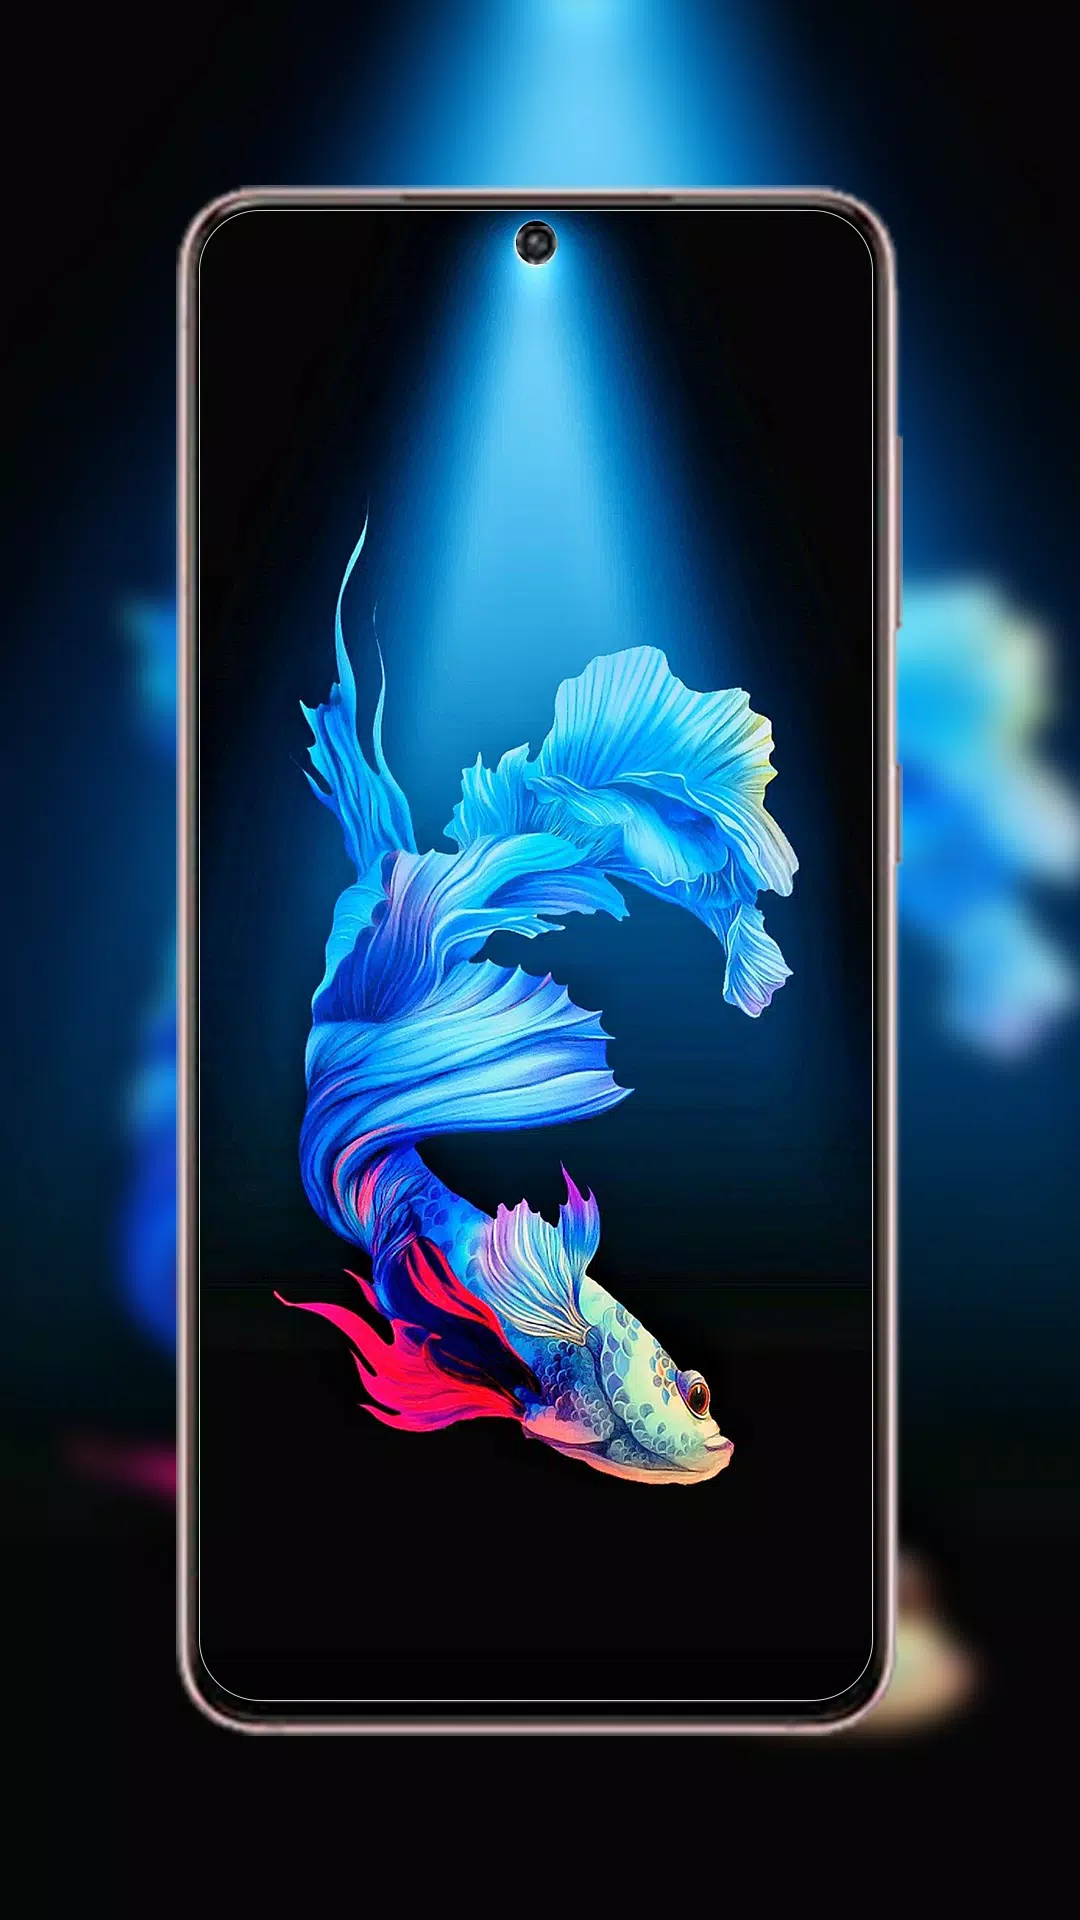 Màn hình của Samsung Galaxy S21 Ultra 4K - Màn hình vô cực QHD+ Dynamic AMOLED 2x có màu sắc sống động và độ sáng cao, mang đến trải nghiệm hình ảnh tuyệt vời. Hãy nhấn vào ảnh liên quan để thấy rõ hơn về không gian màn hình rộng lớn và độ phân giải 4K cực kỳ ấn tượng của Samsung Galaxy S21 Ultra 4K.